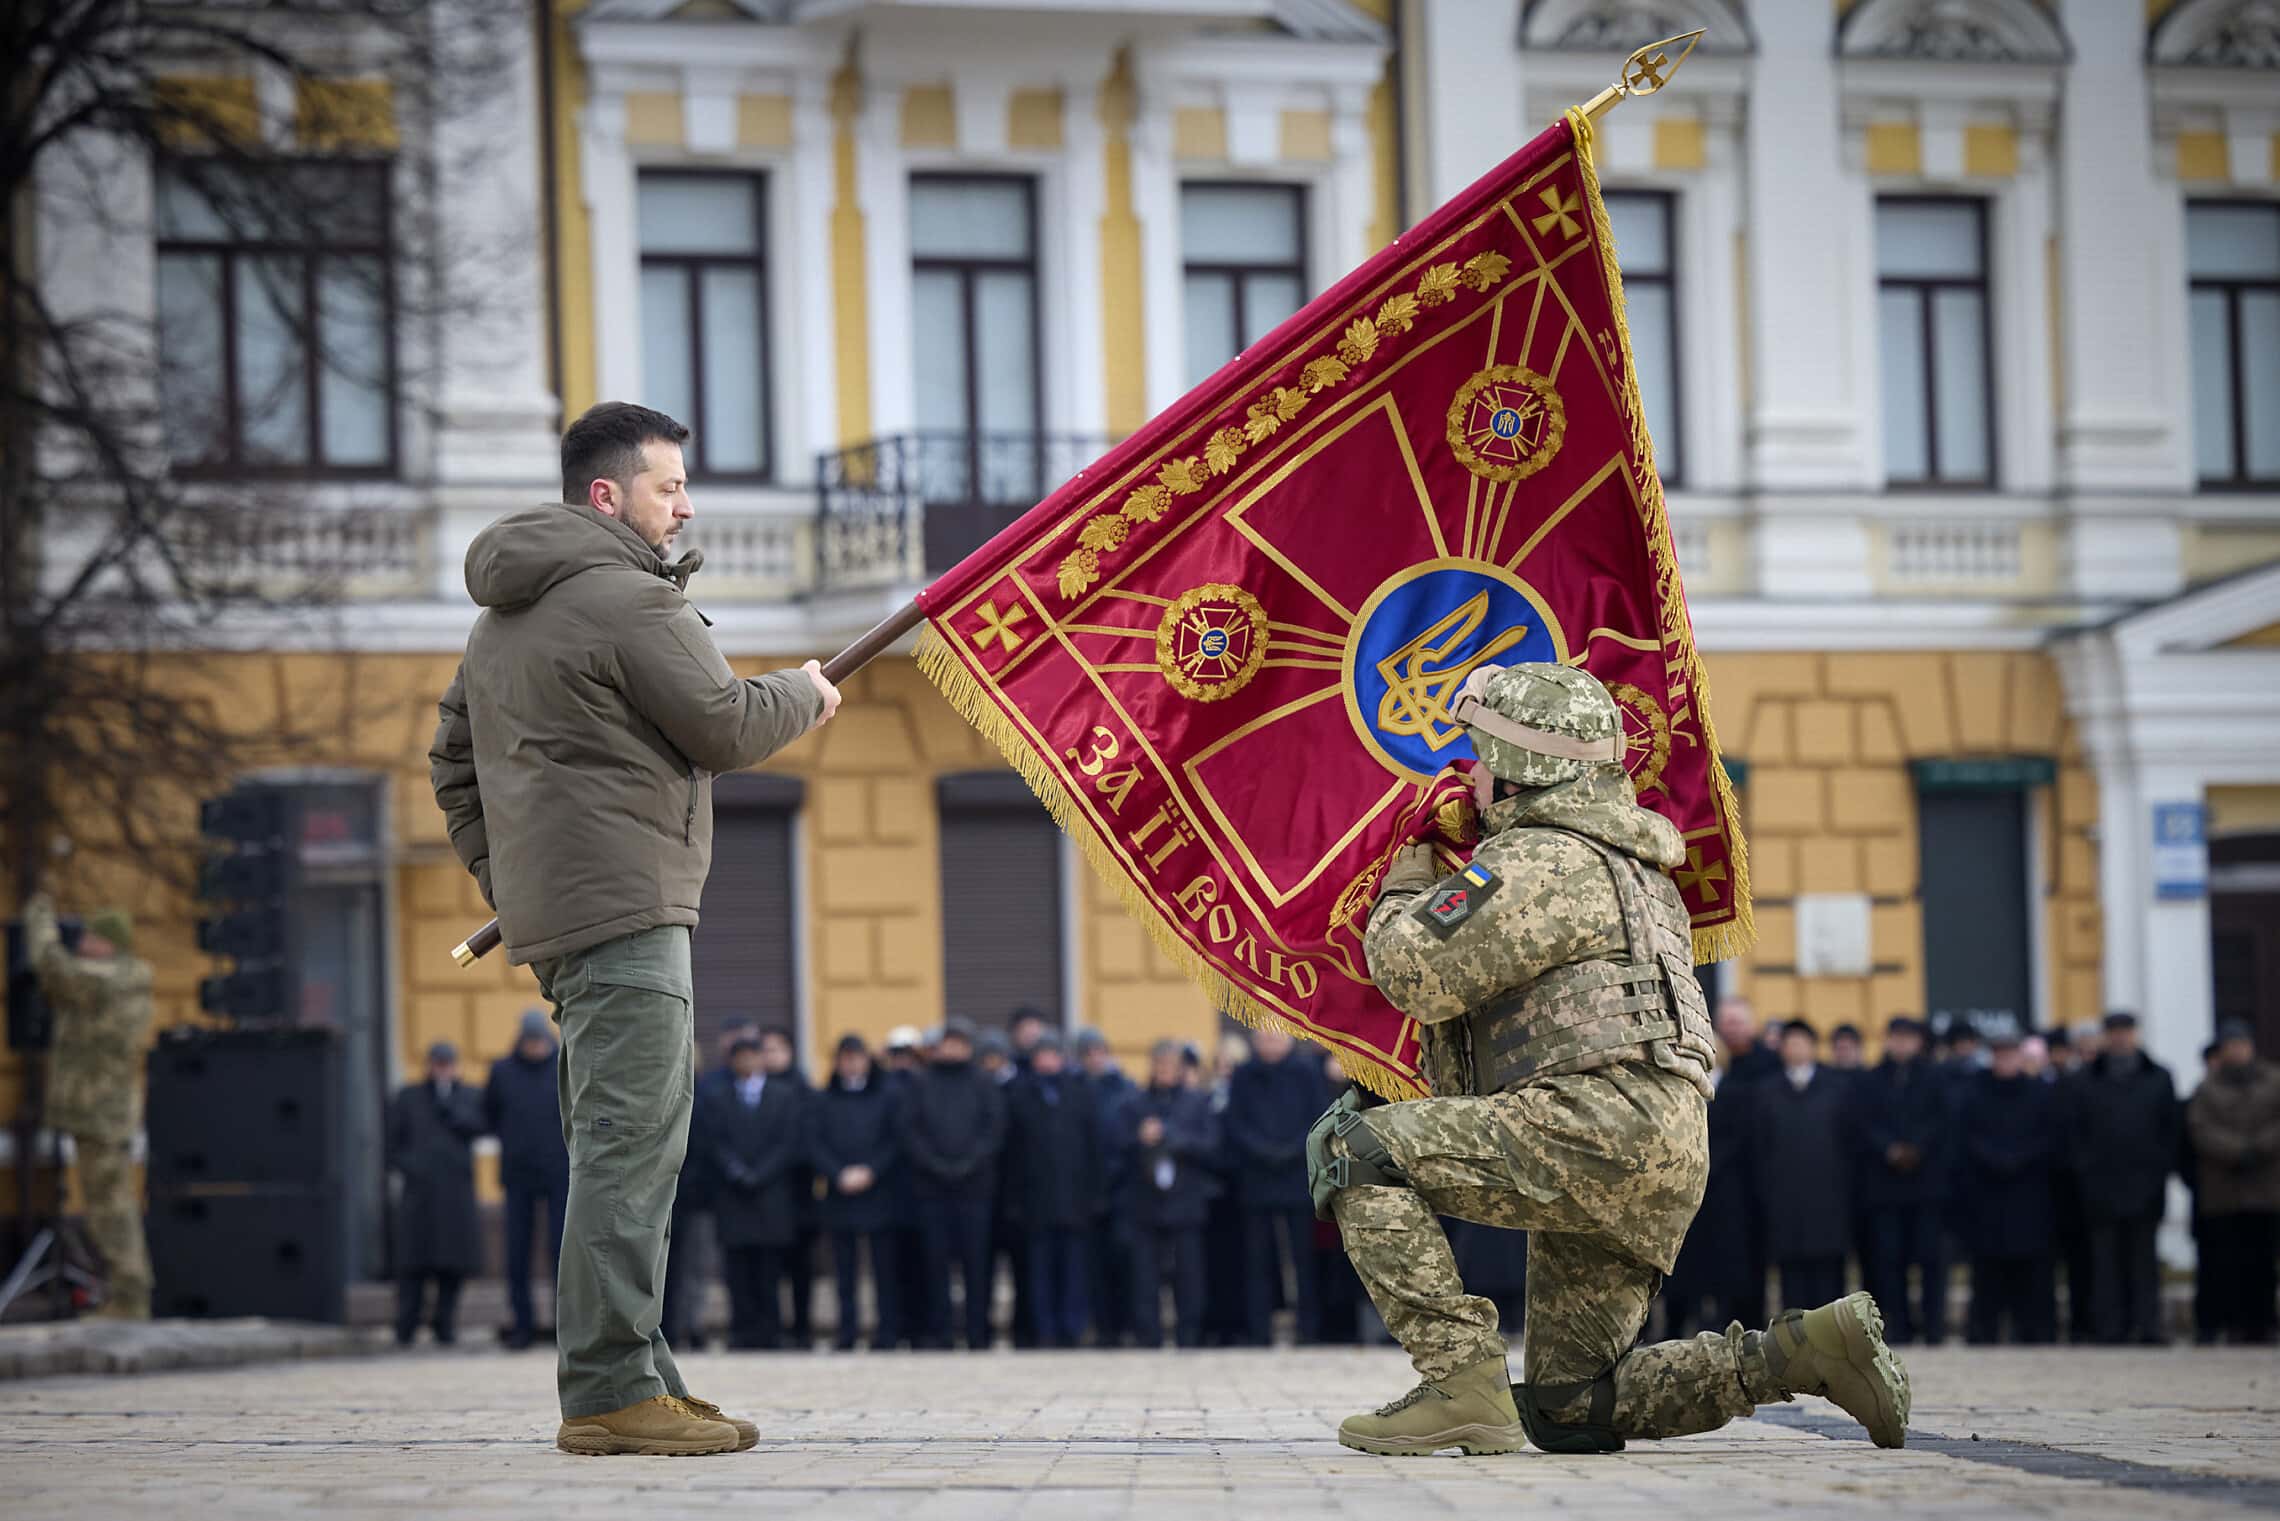 נשיא אוקראינה וולודימיר זלנסקי מחזיק דגל של יחידה צבאית באירוע לציון שנה לפלישה הרוסית למדינה. קייב, 24 בפברואר 2023 (צילום: Ukrainian Presidential Press Office via AP)